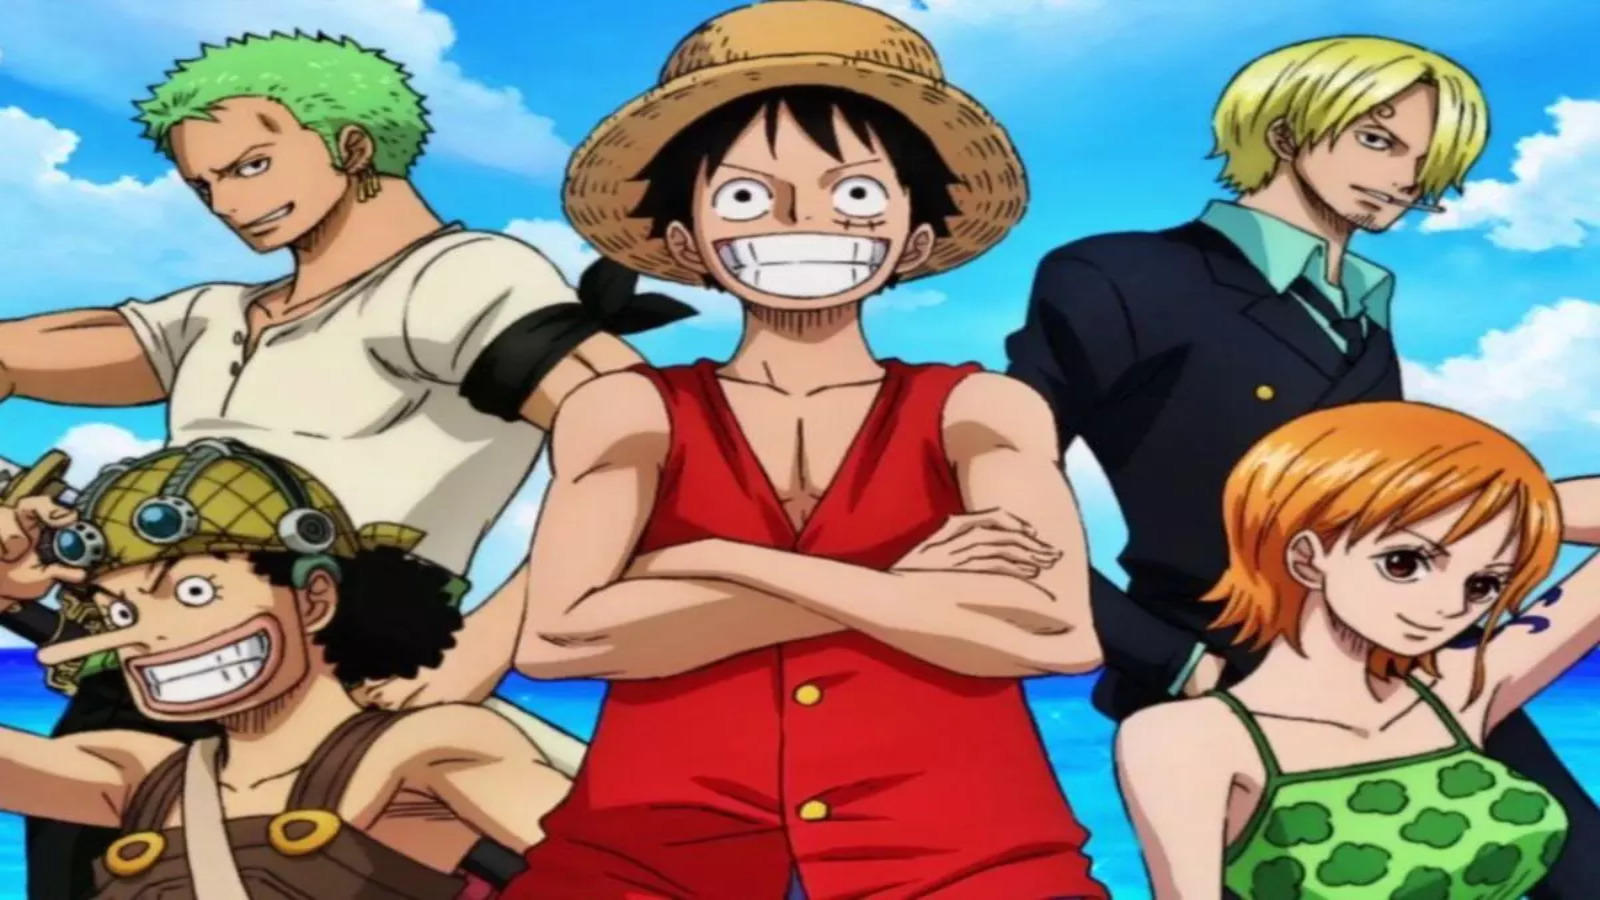 Upcoming ShowdownWhy Fans Must Wait for Law vs Blackbeard Battle in One Piece's Next Episode